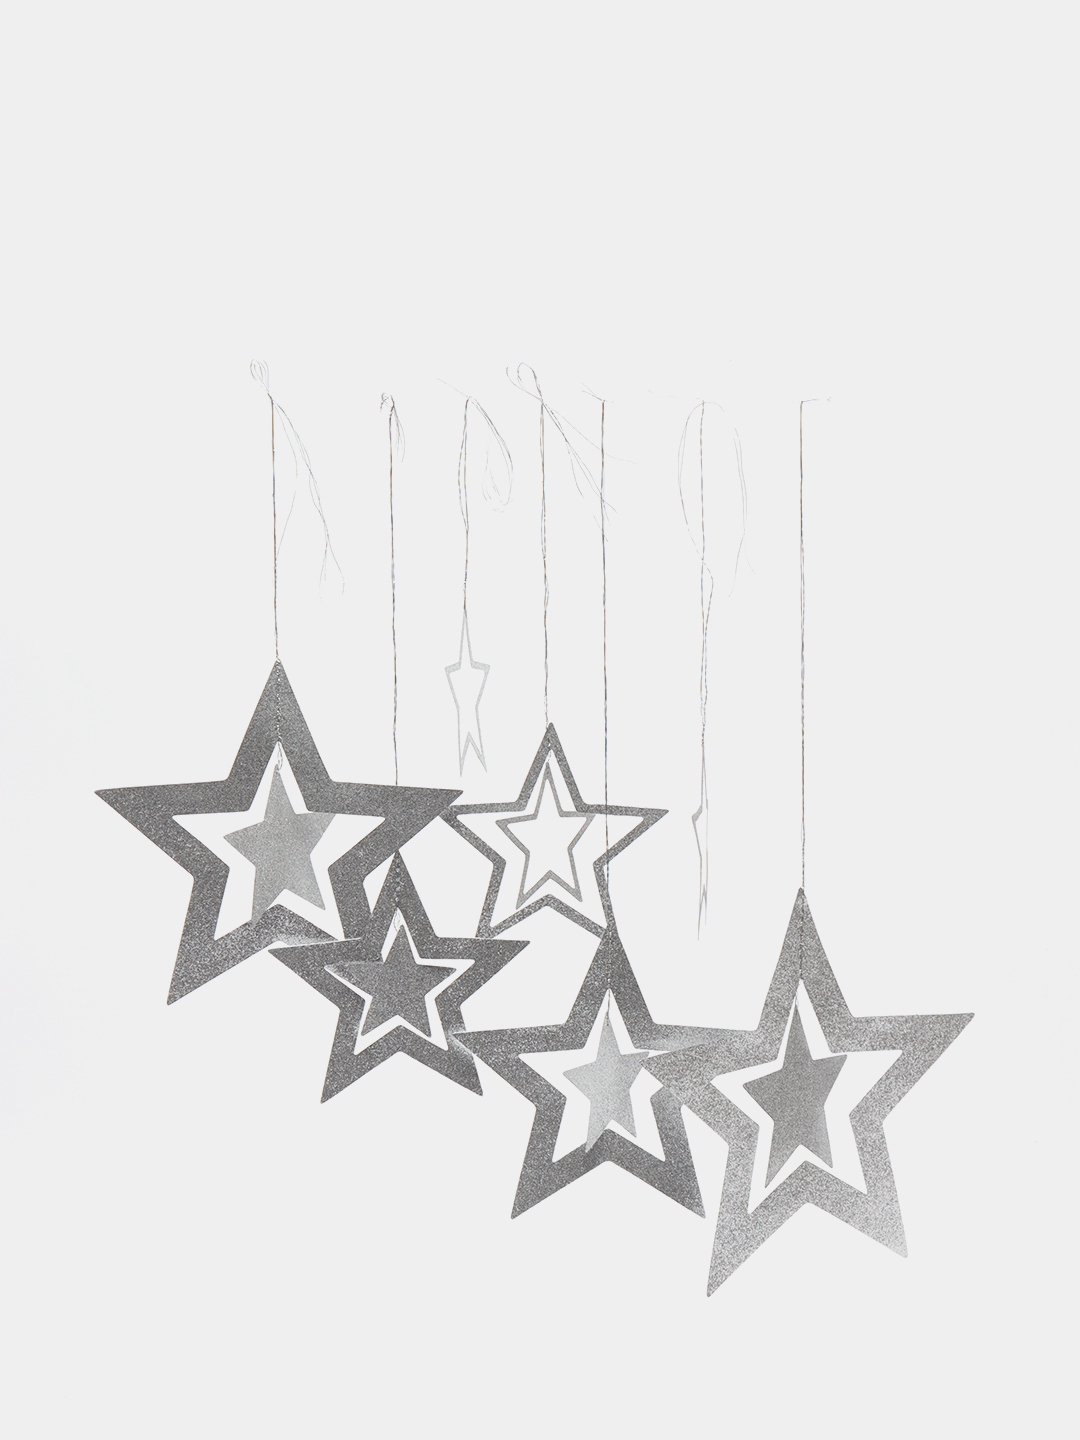 Звезда с гирляндой «Наш уютный Новый Год», 25 × 23.8 см